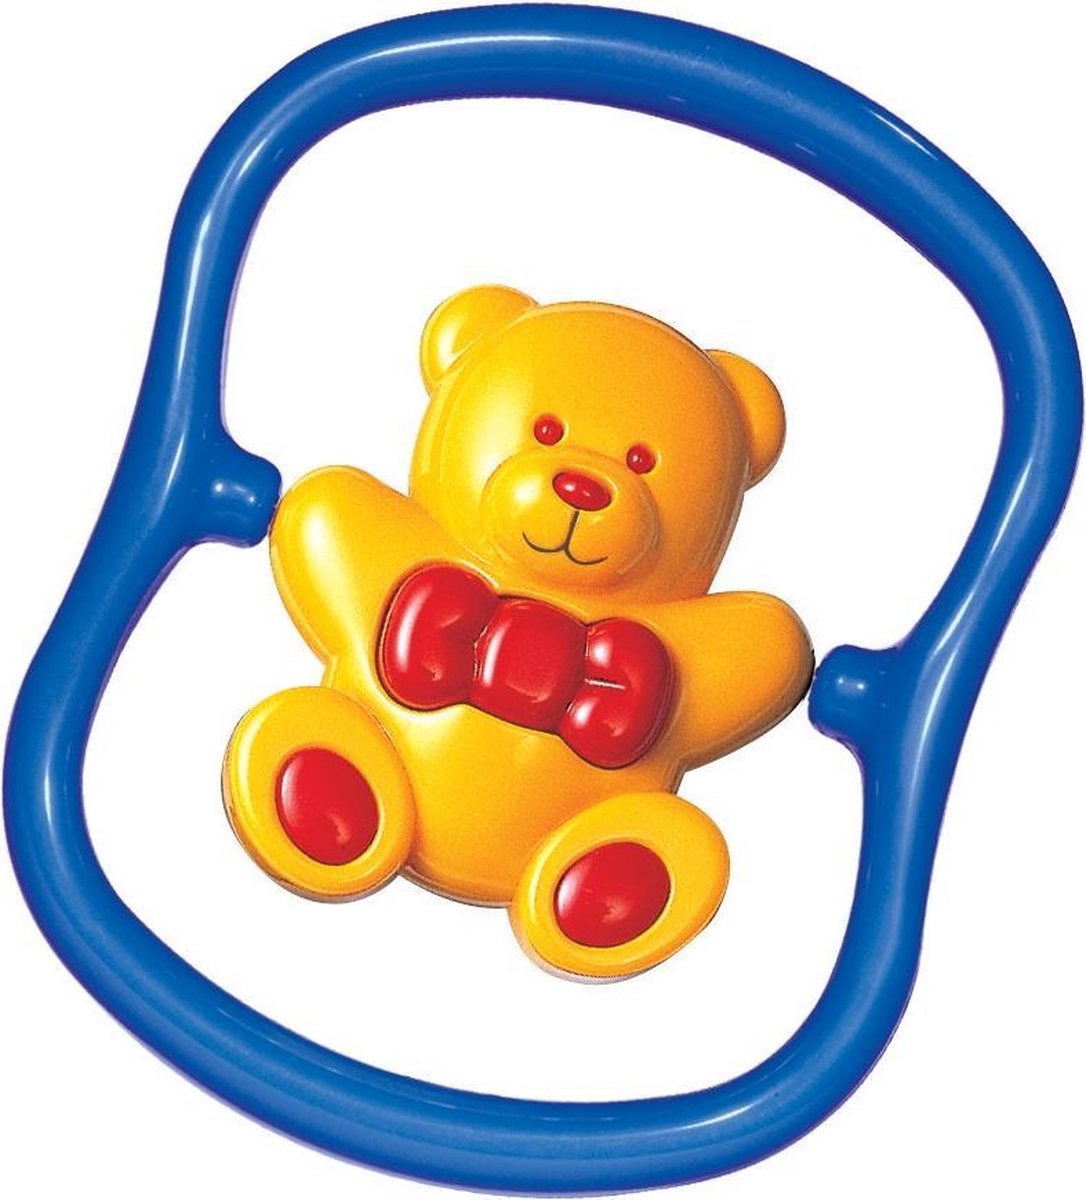 Tolo Toys Teddy Bear Rattle